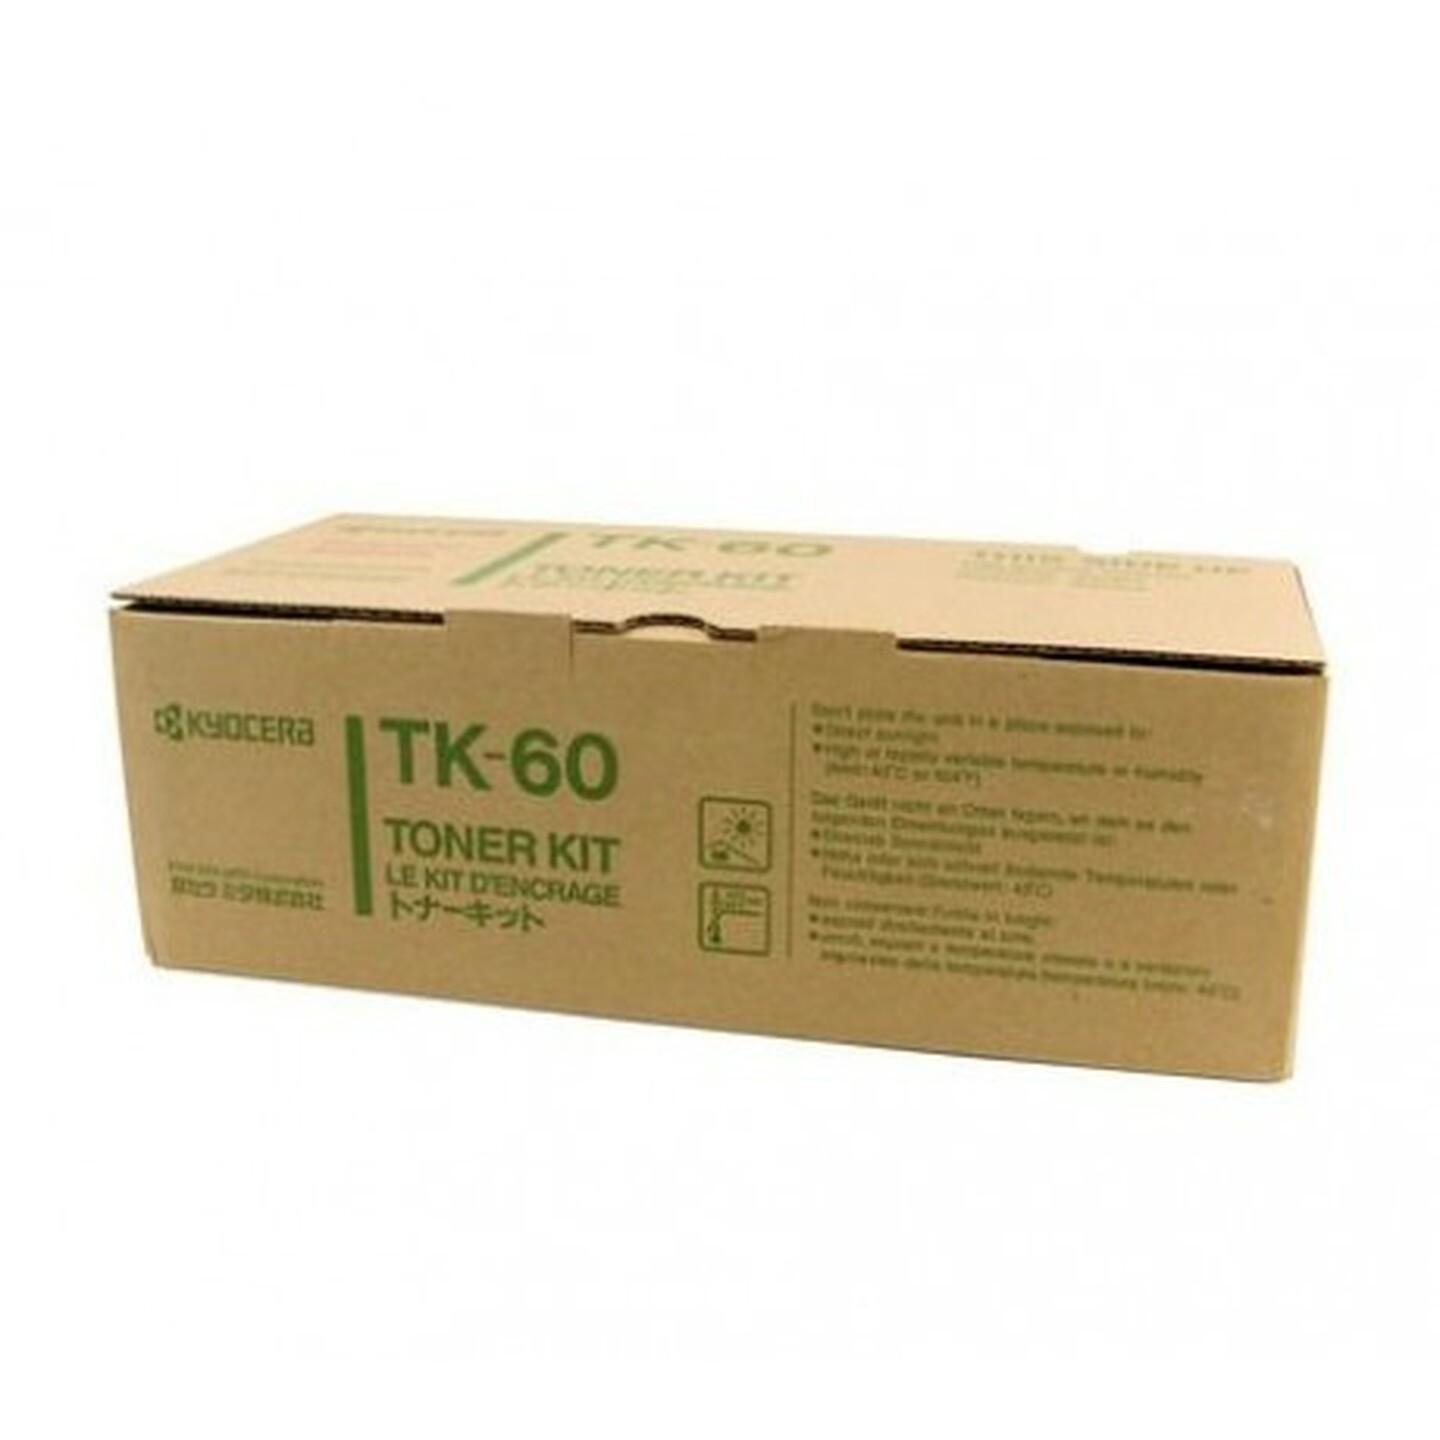 Genuine Kyocera TK60 Printer Toner Cartridge FS1800